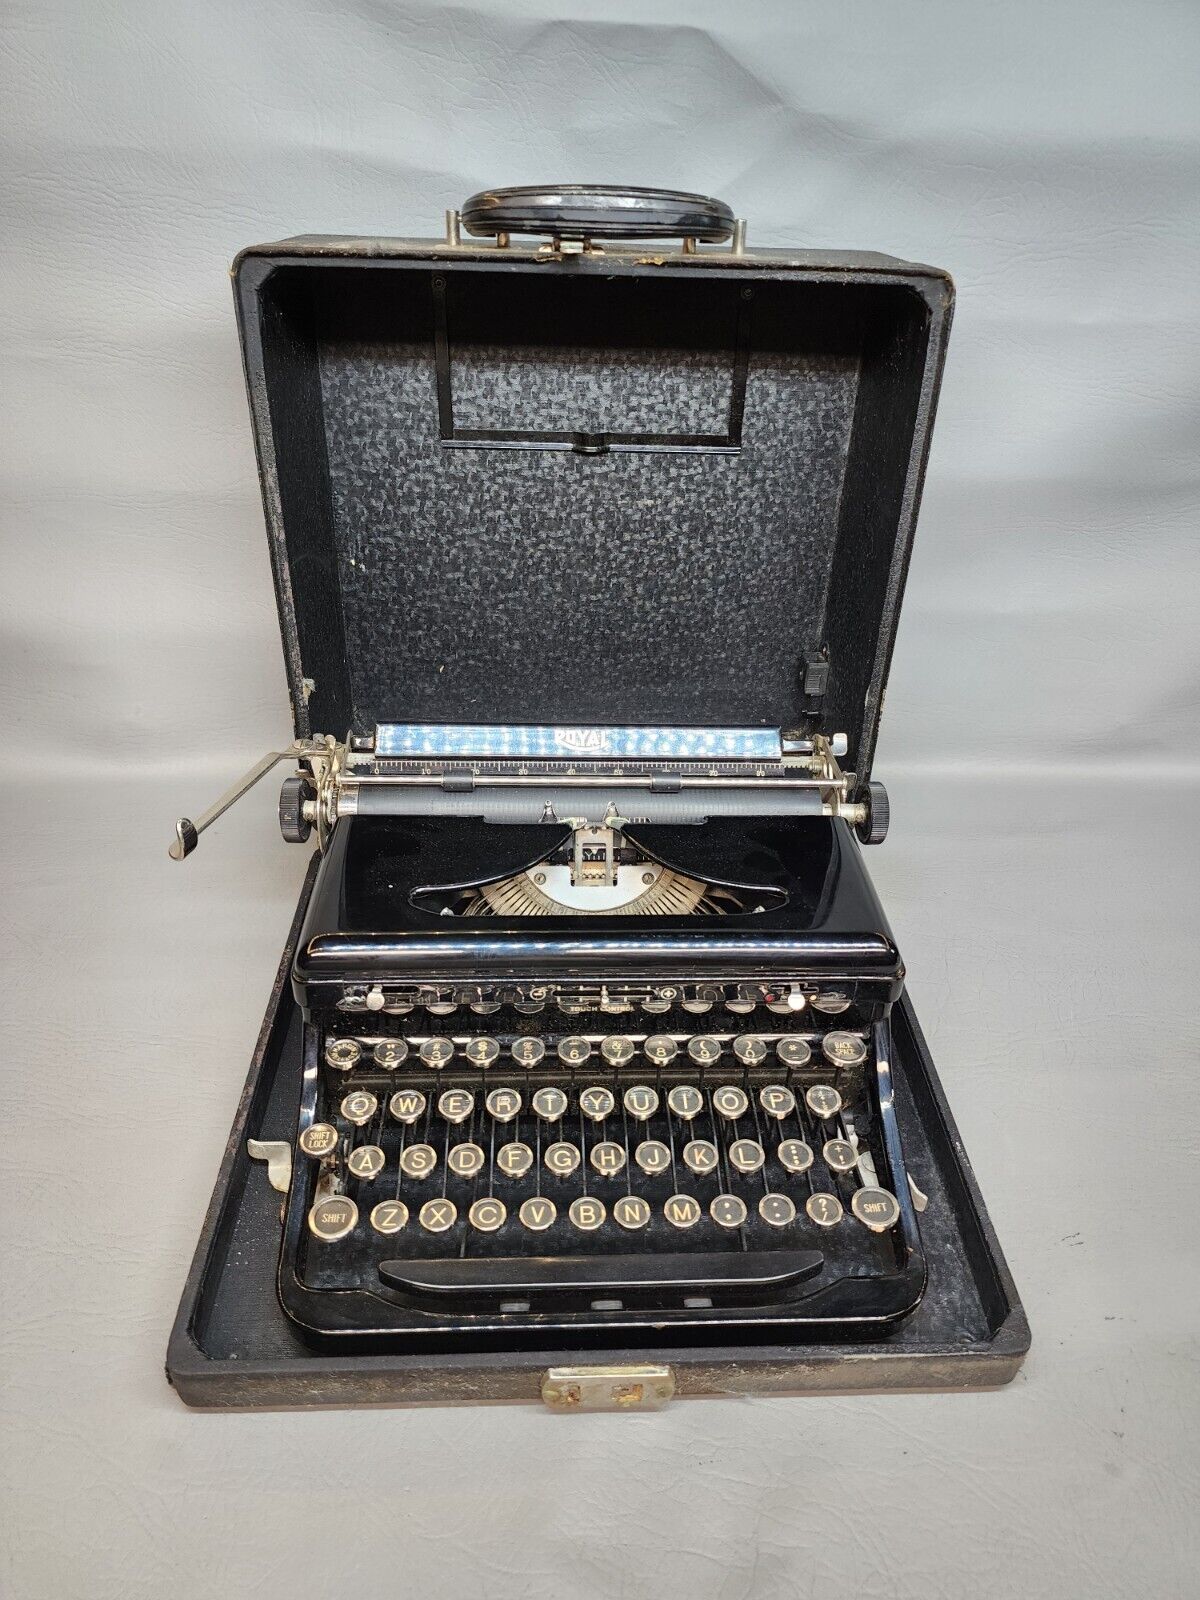 Vintage Royal Model O Typewriter w/ Case